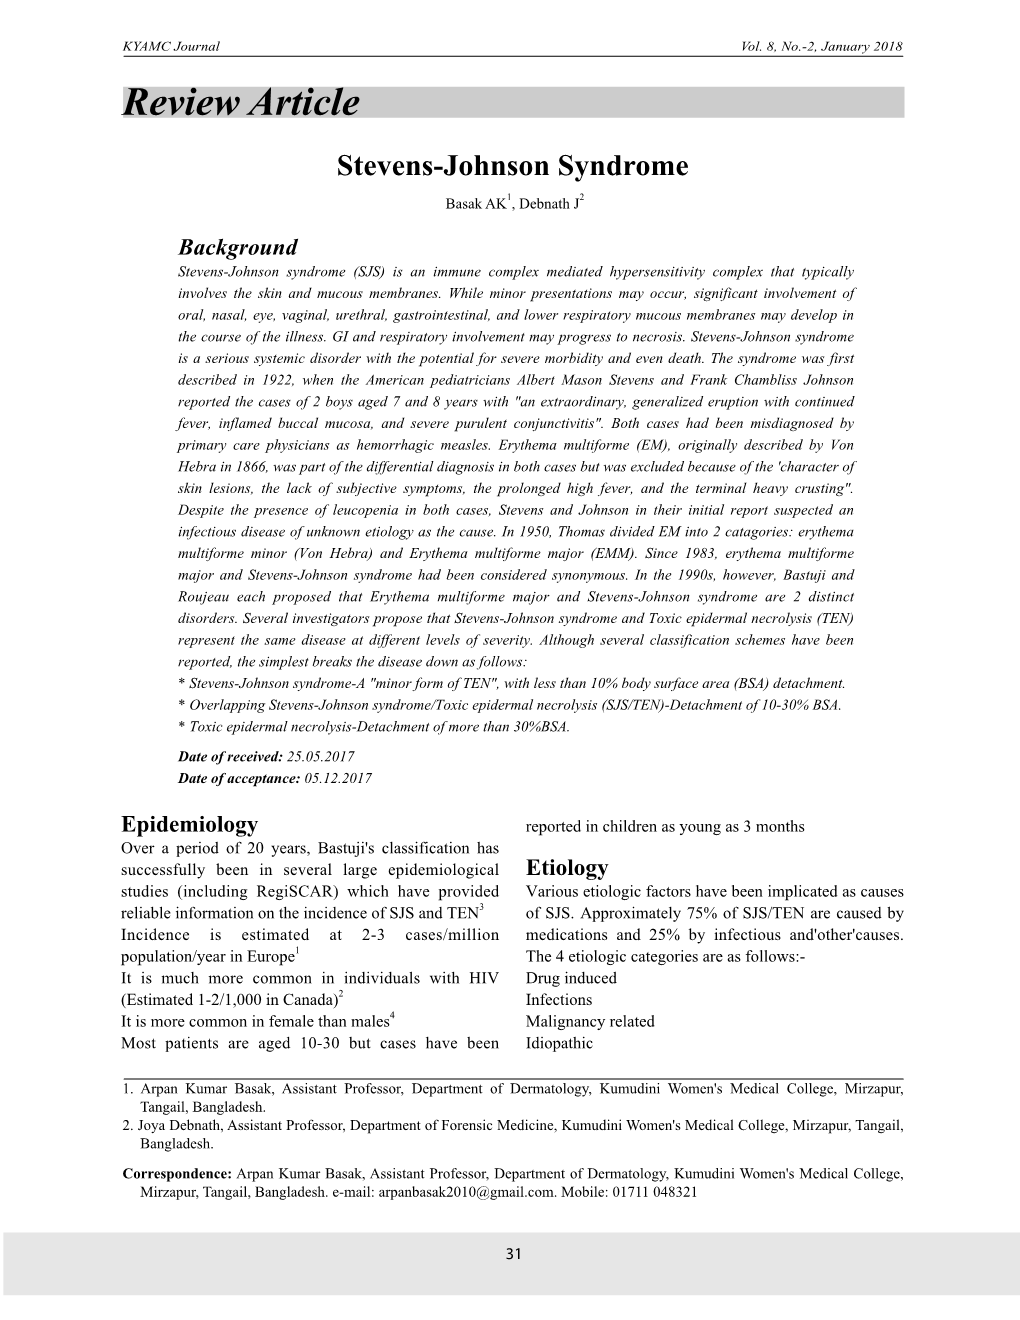 Review Article Stevens-Johnson Syndrome Basak AK1, Debnath J2